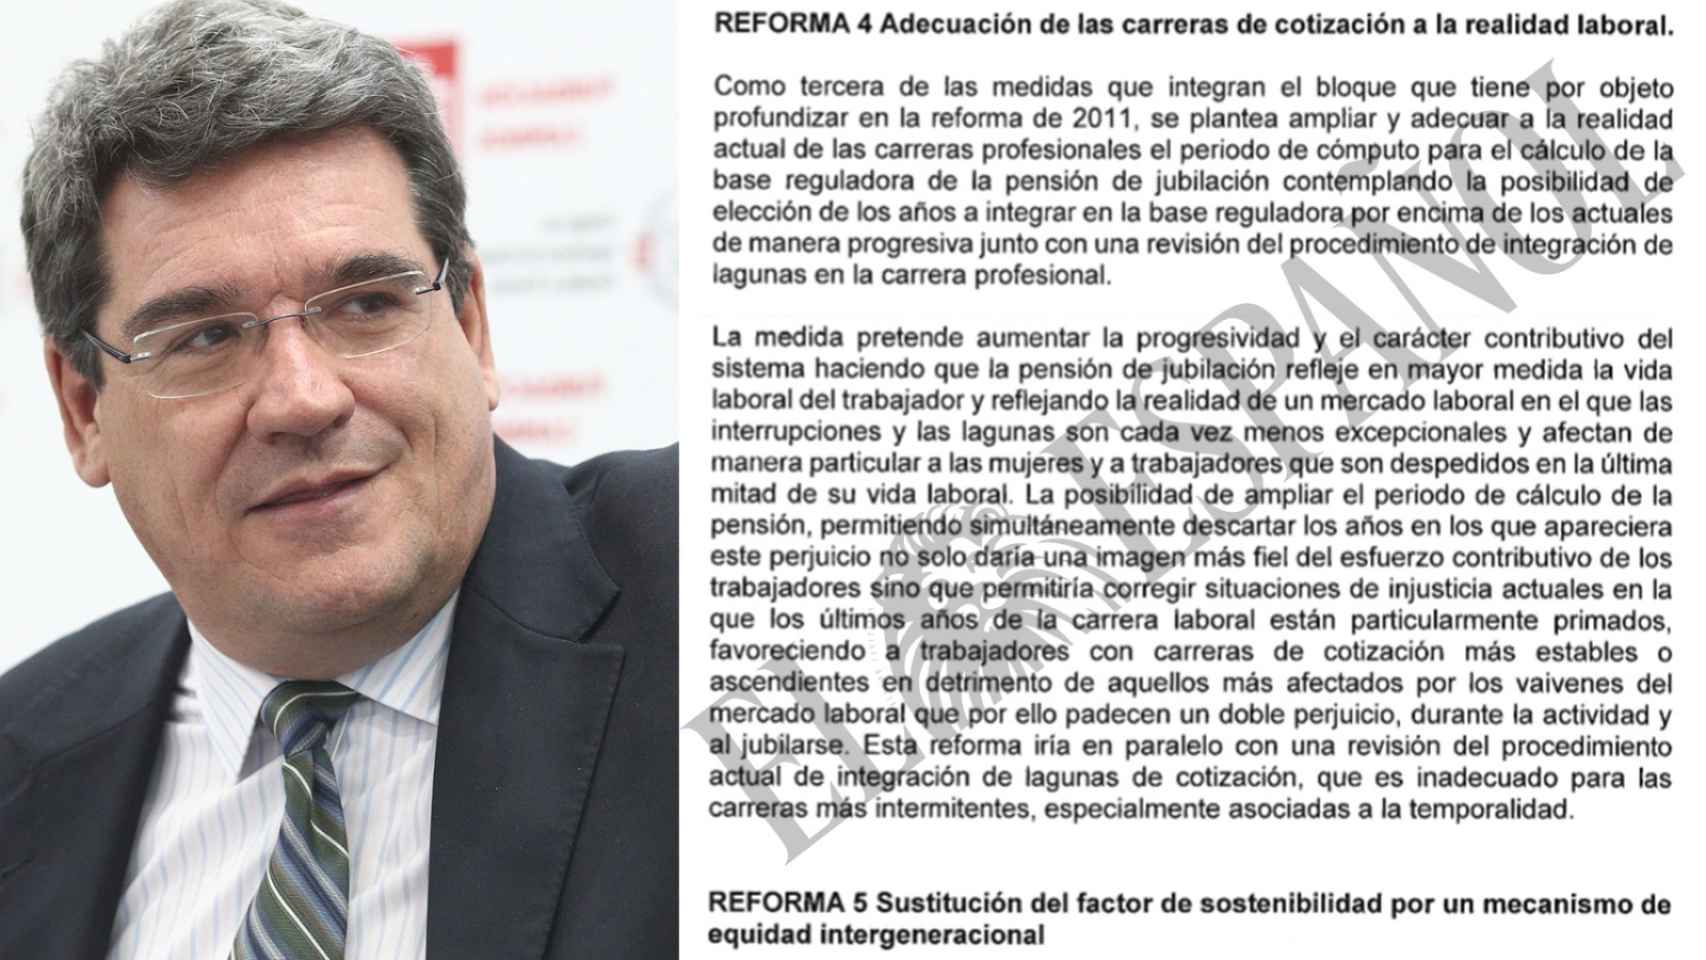 El ministro de Inclusión, Seguridad Social y Migraciones, José Luis Escrivá, junto al documento.